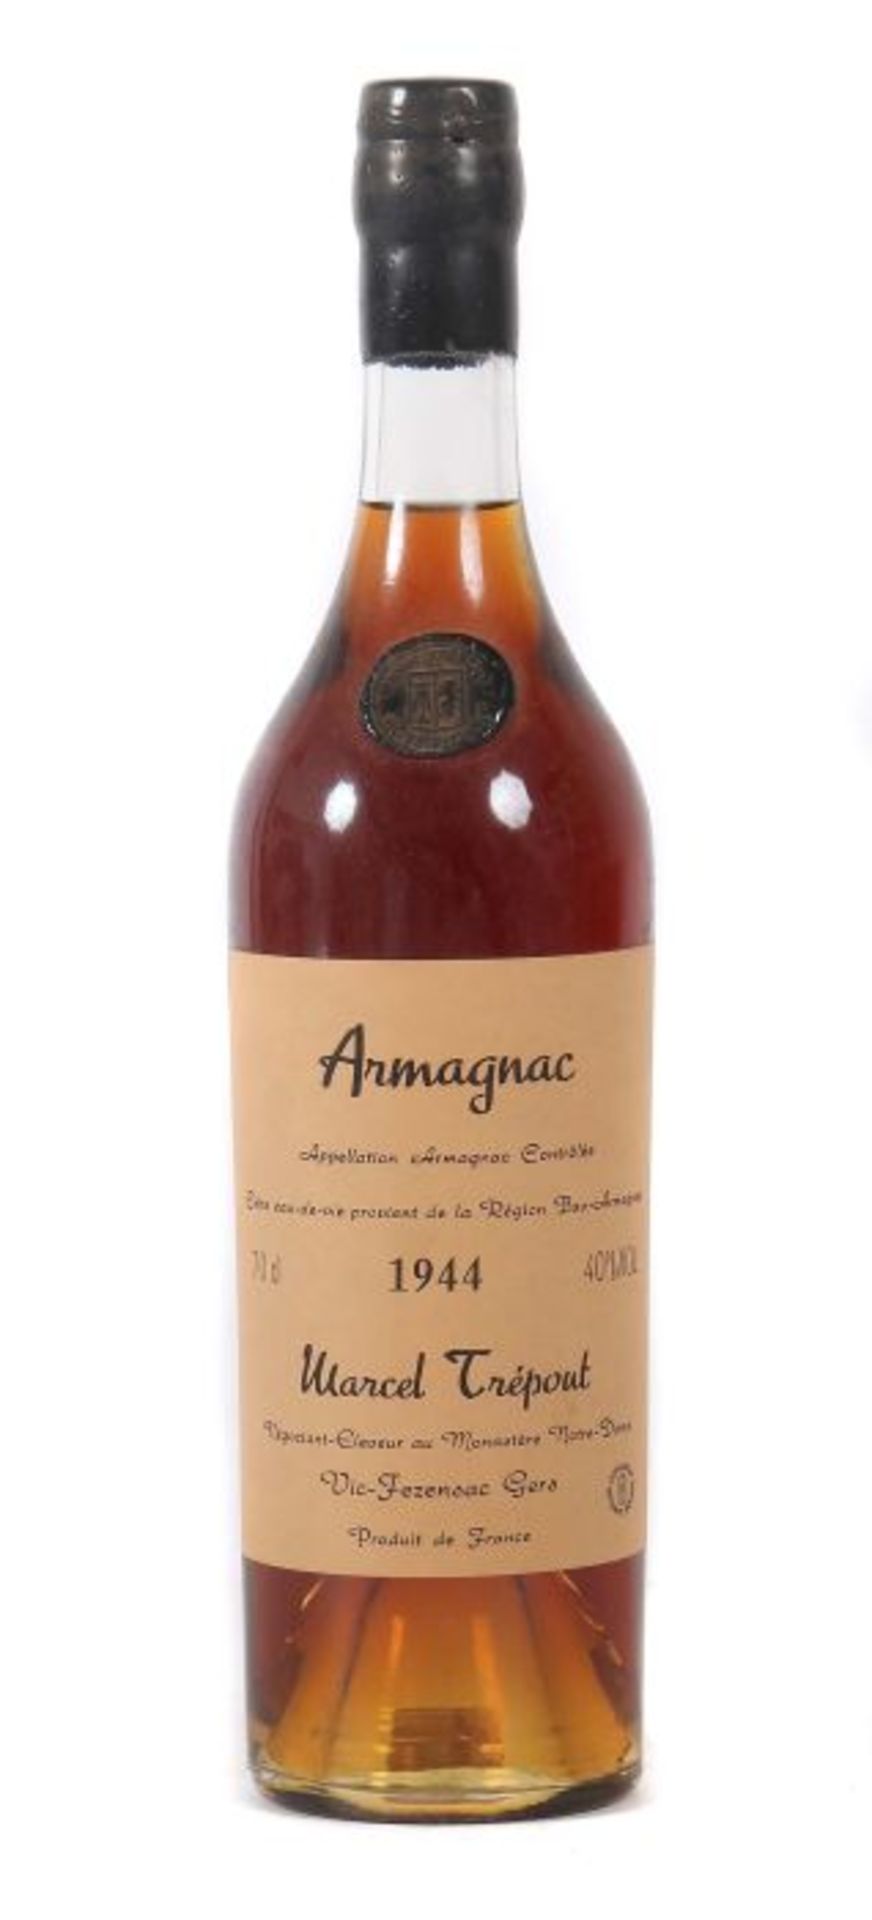 ArmagnacMarcel Trépout, Vic-Fezensac, 1944er JG, Abfüllung 2004, 40% vol., 0,7 l.- - -25.00 %